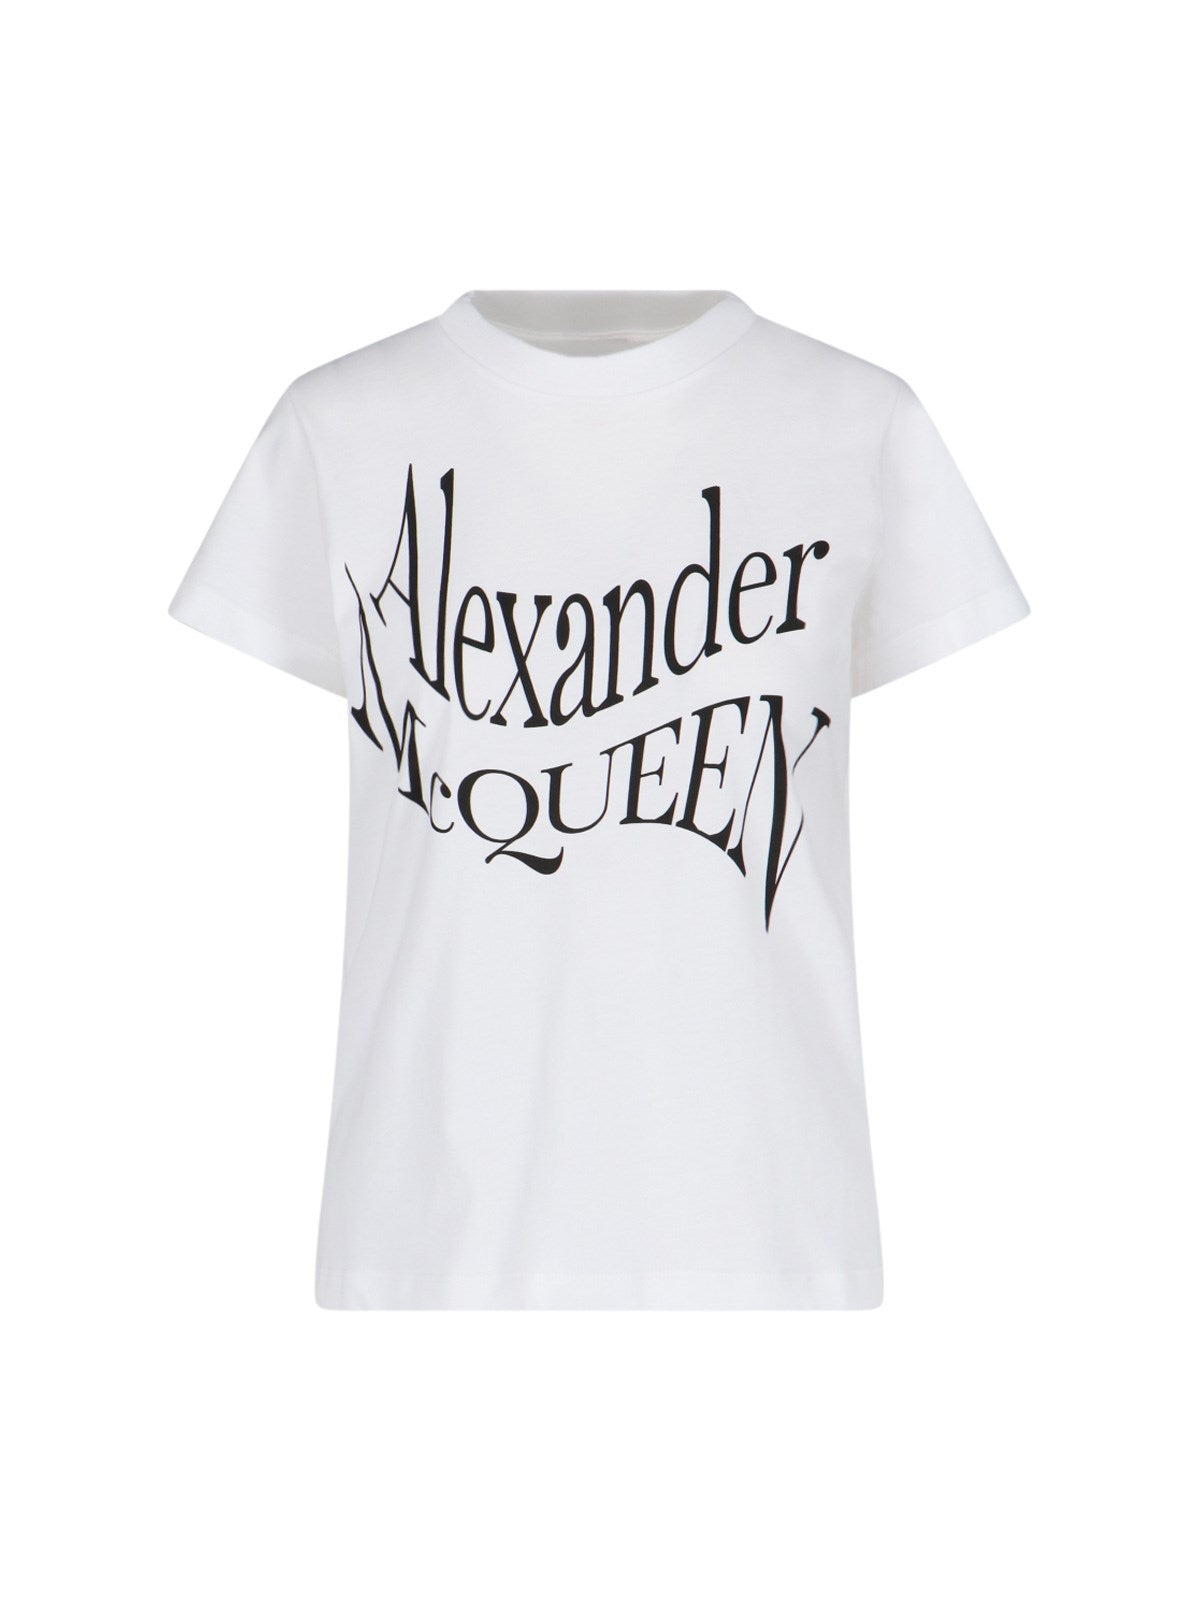 Alexander McQueen T-Shirt Logo-t-shirt-Alexander McQueen-T-shirt logo Alexander McQueen, in cotone bianco, girocollo, maniche corte, stampa logo nero fronte, orlo dritto.-Dresso